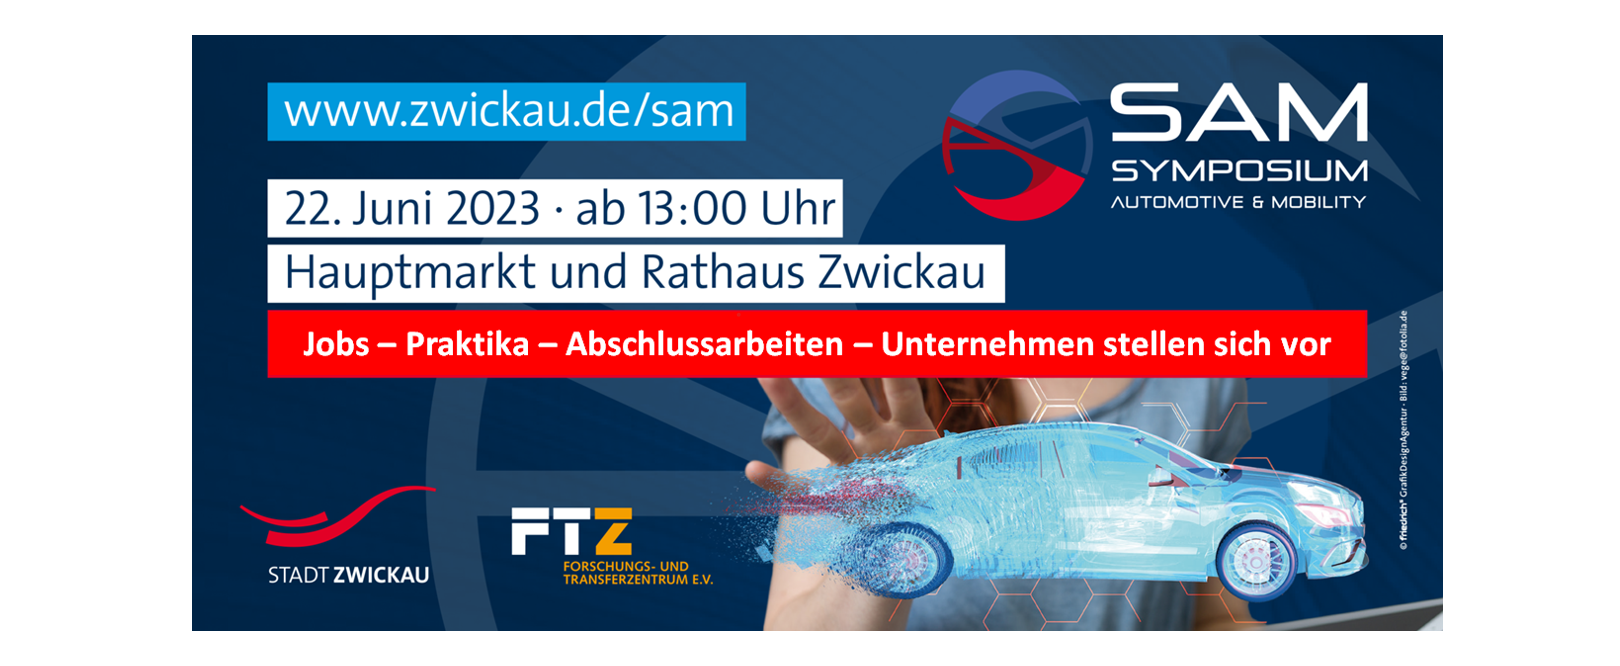 Abbildung: SAM Symposium Automotive & Mobility, Hauptmarkt Zwickau, 22.06.2023